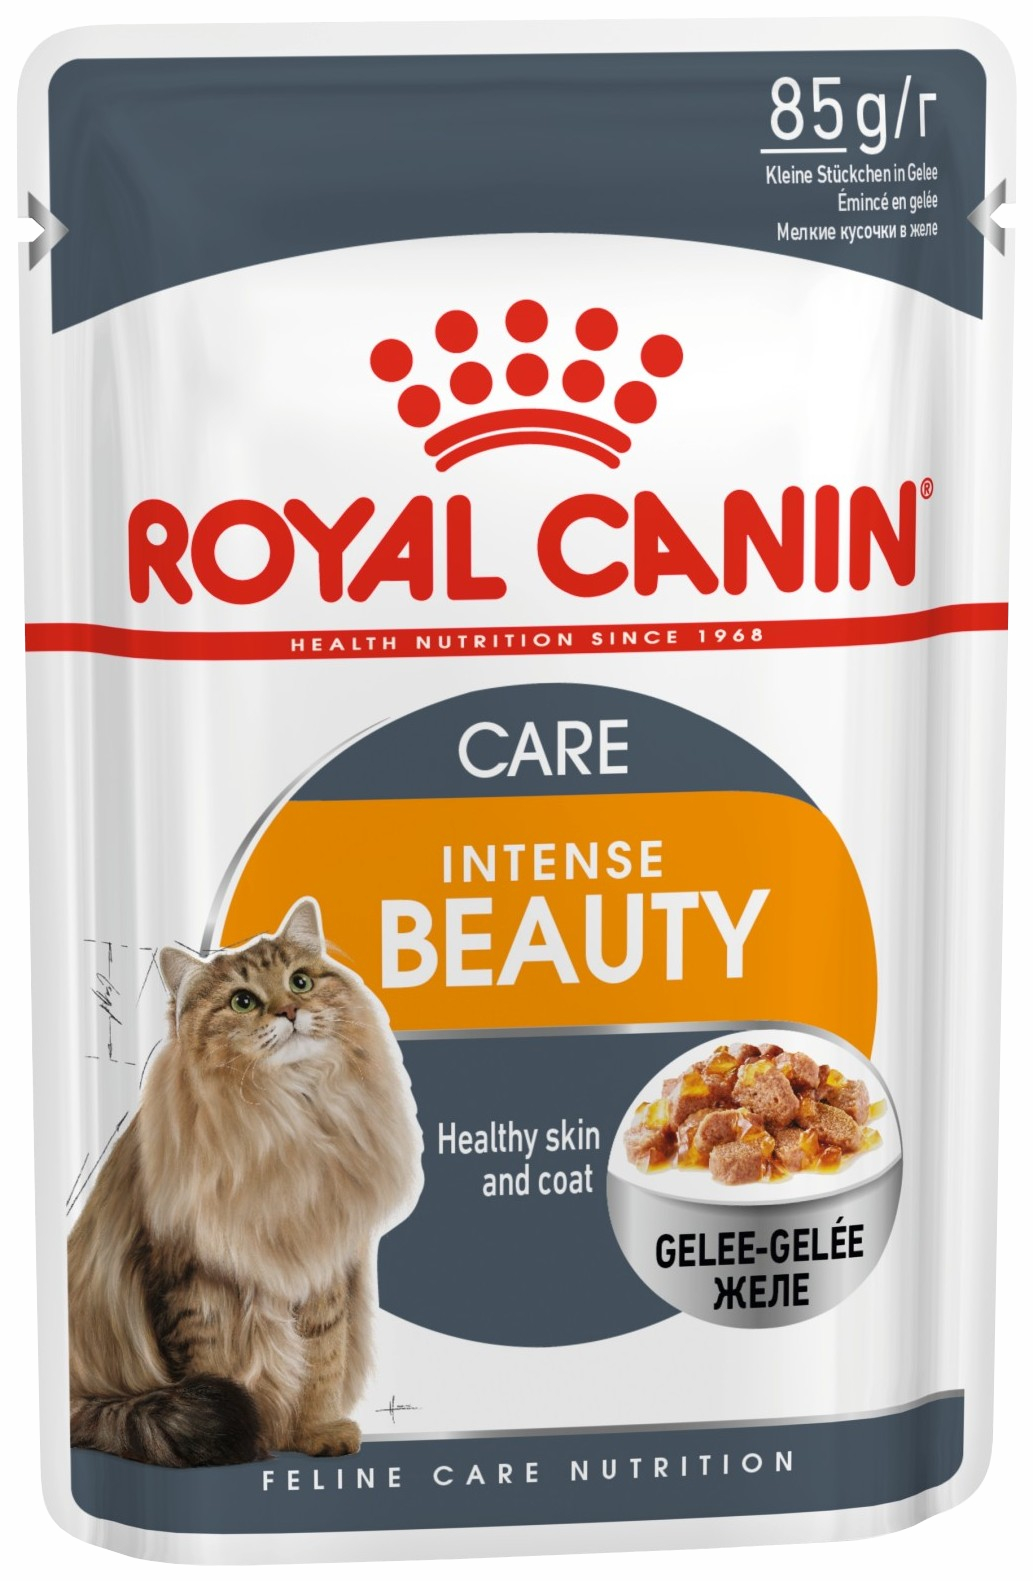 Влажный корм для кошек Royal Canin Intense Beauty, мясо, для кожи и шерсти, 24шт по 85г